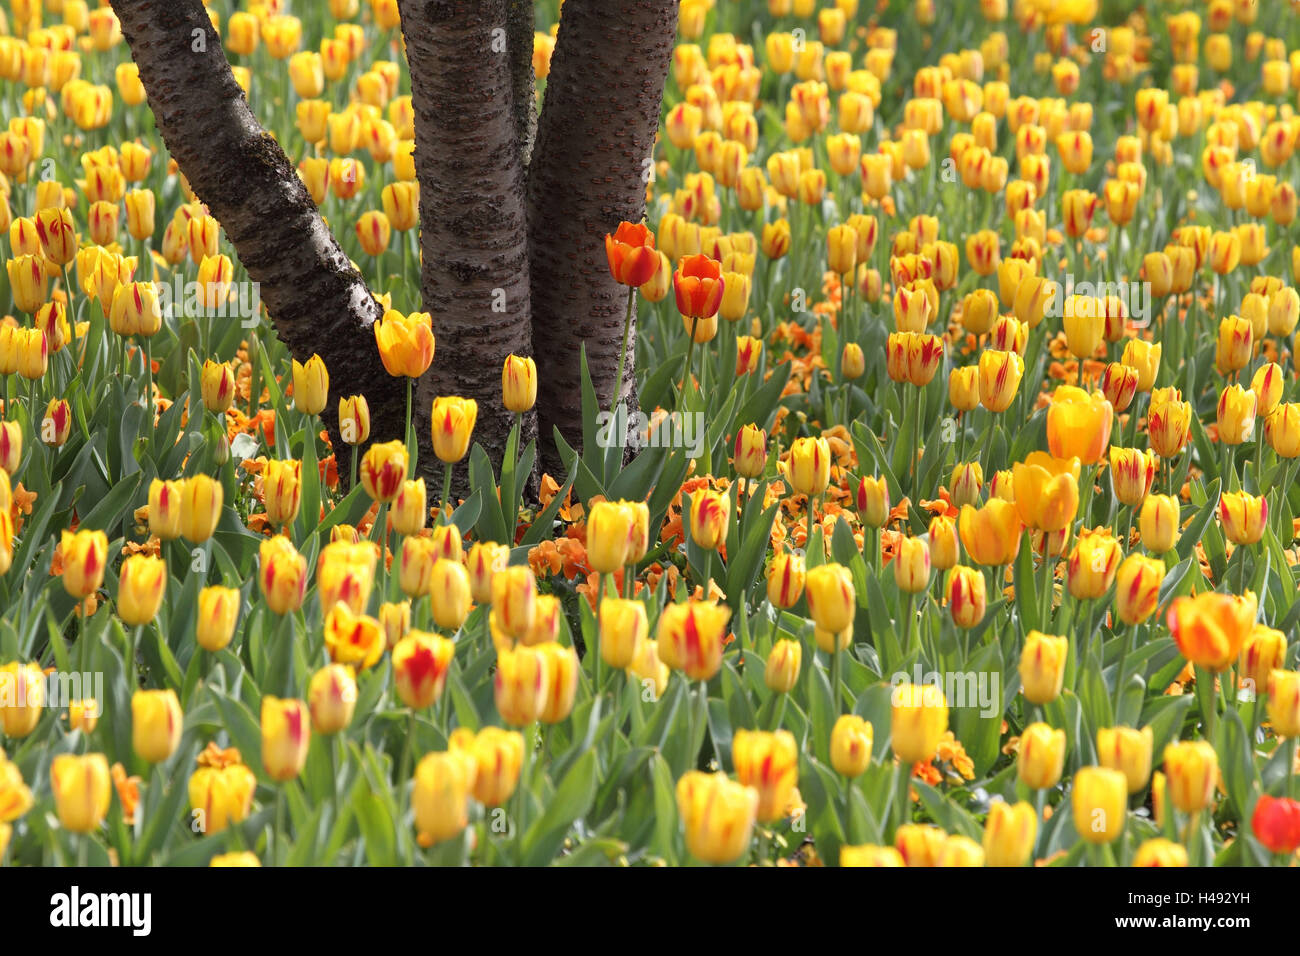 Tulip field, Stock Photo